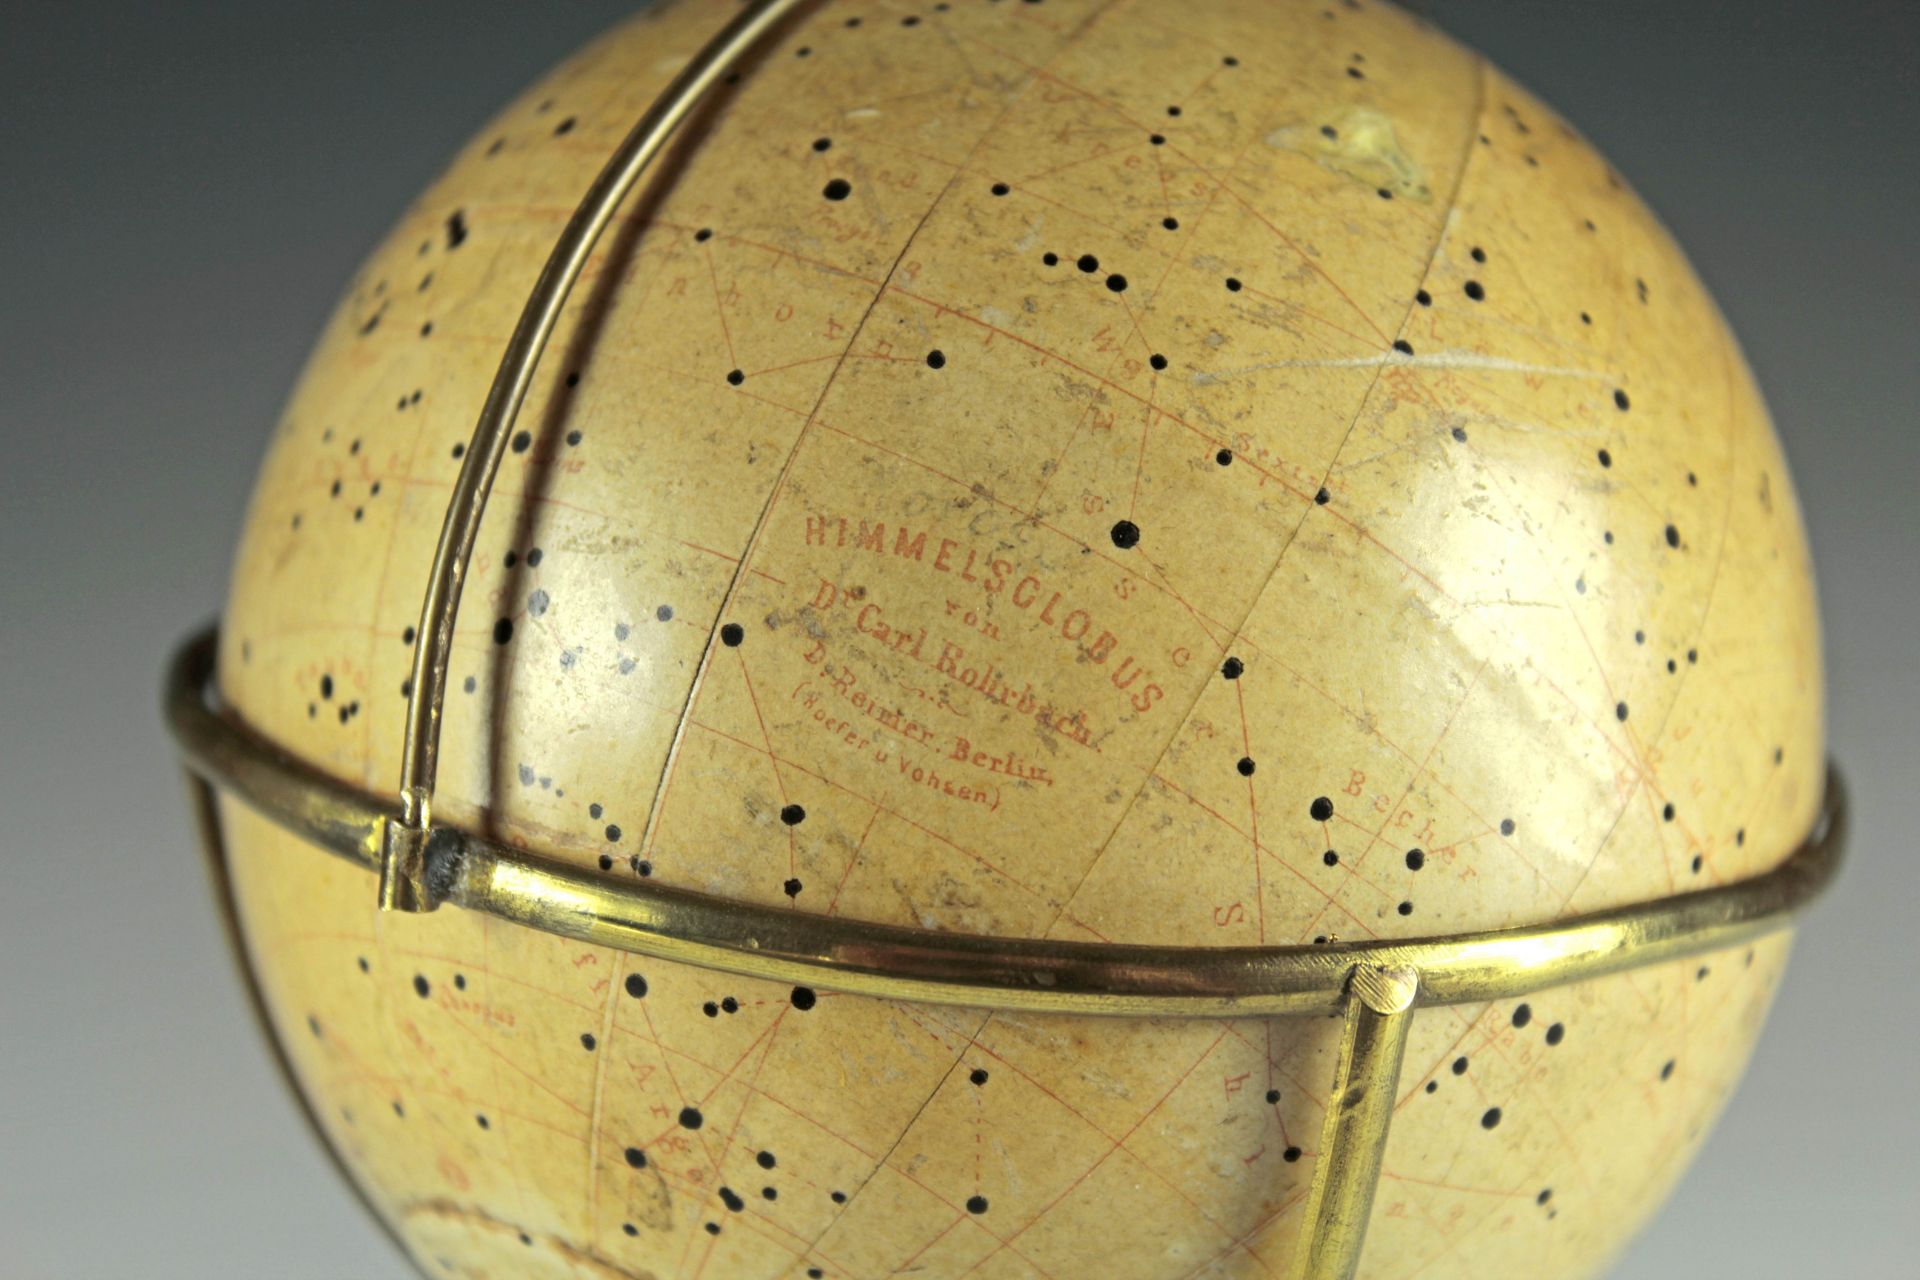 Himmelsglobus von Carl Rohrbach - Bild 2 aus 3